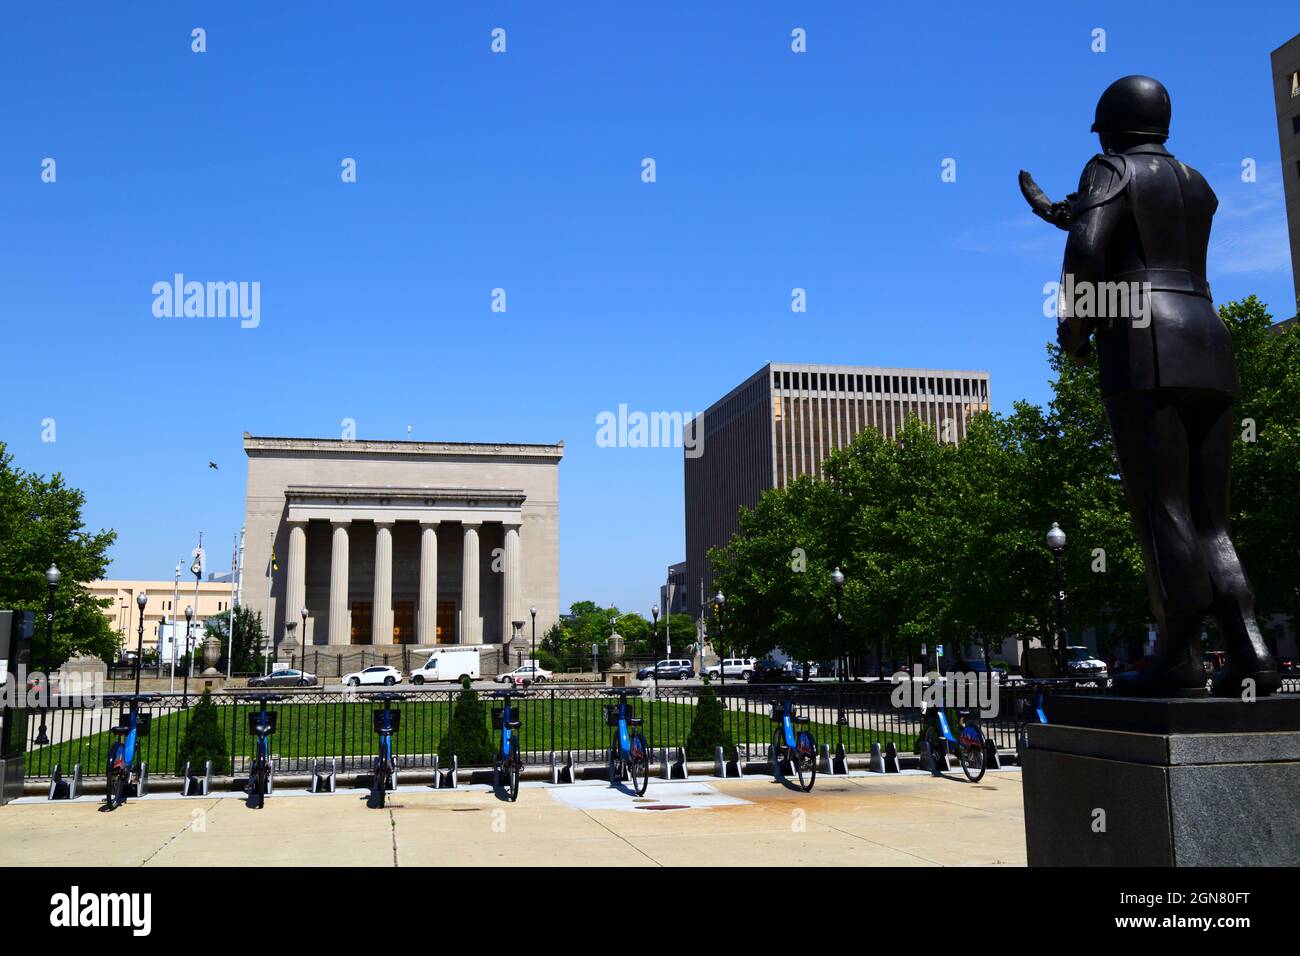 Baltimore War Memorial (101 N gay St), statue de soldat inconnu devant l'hôtel de ville et War Memorial Plaza, Baltimore, Maryland, États-Unis Banque D'Images